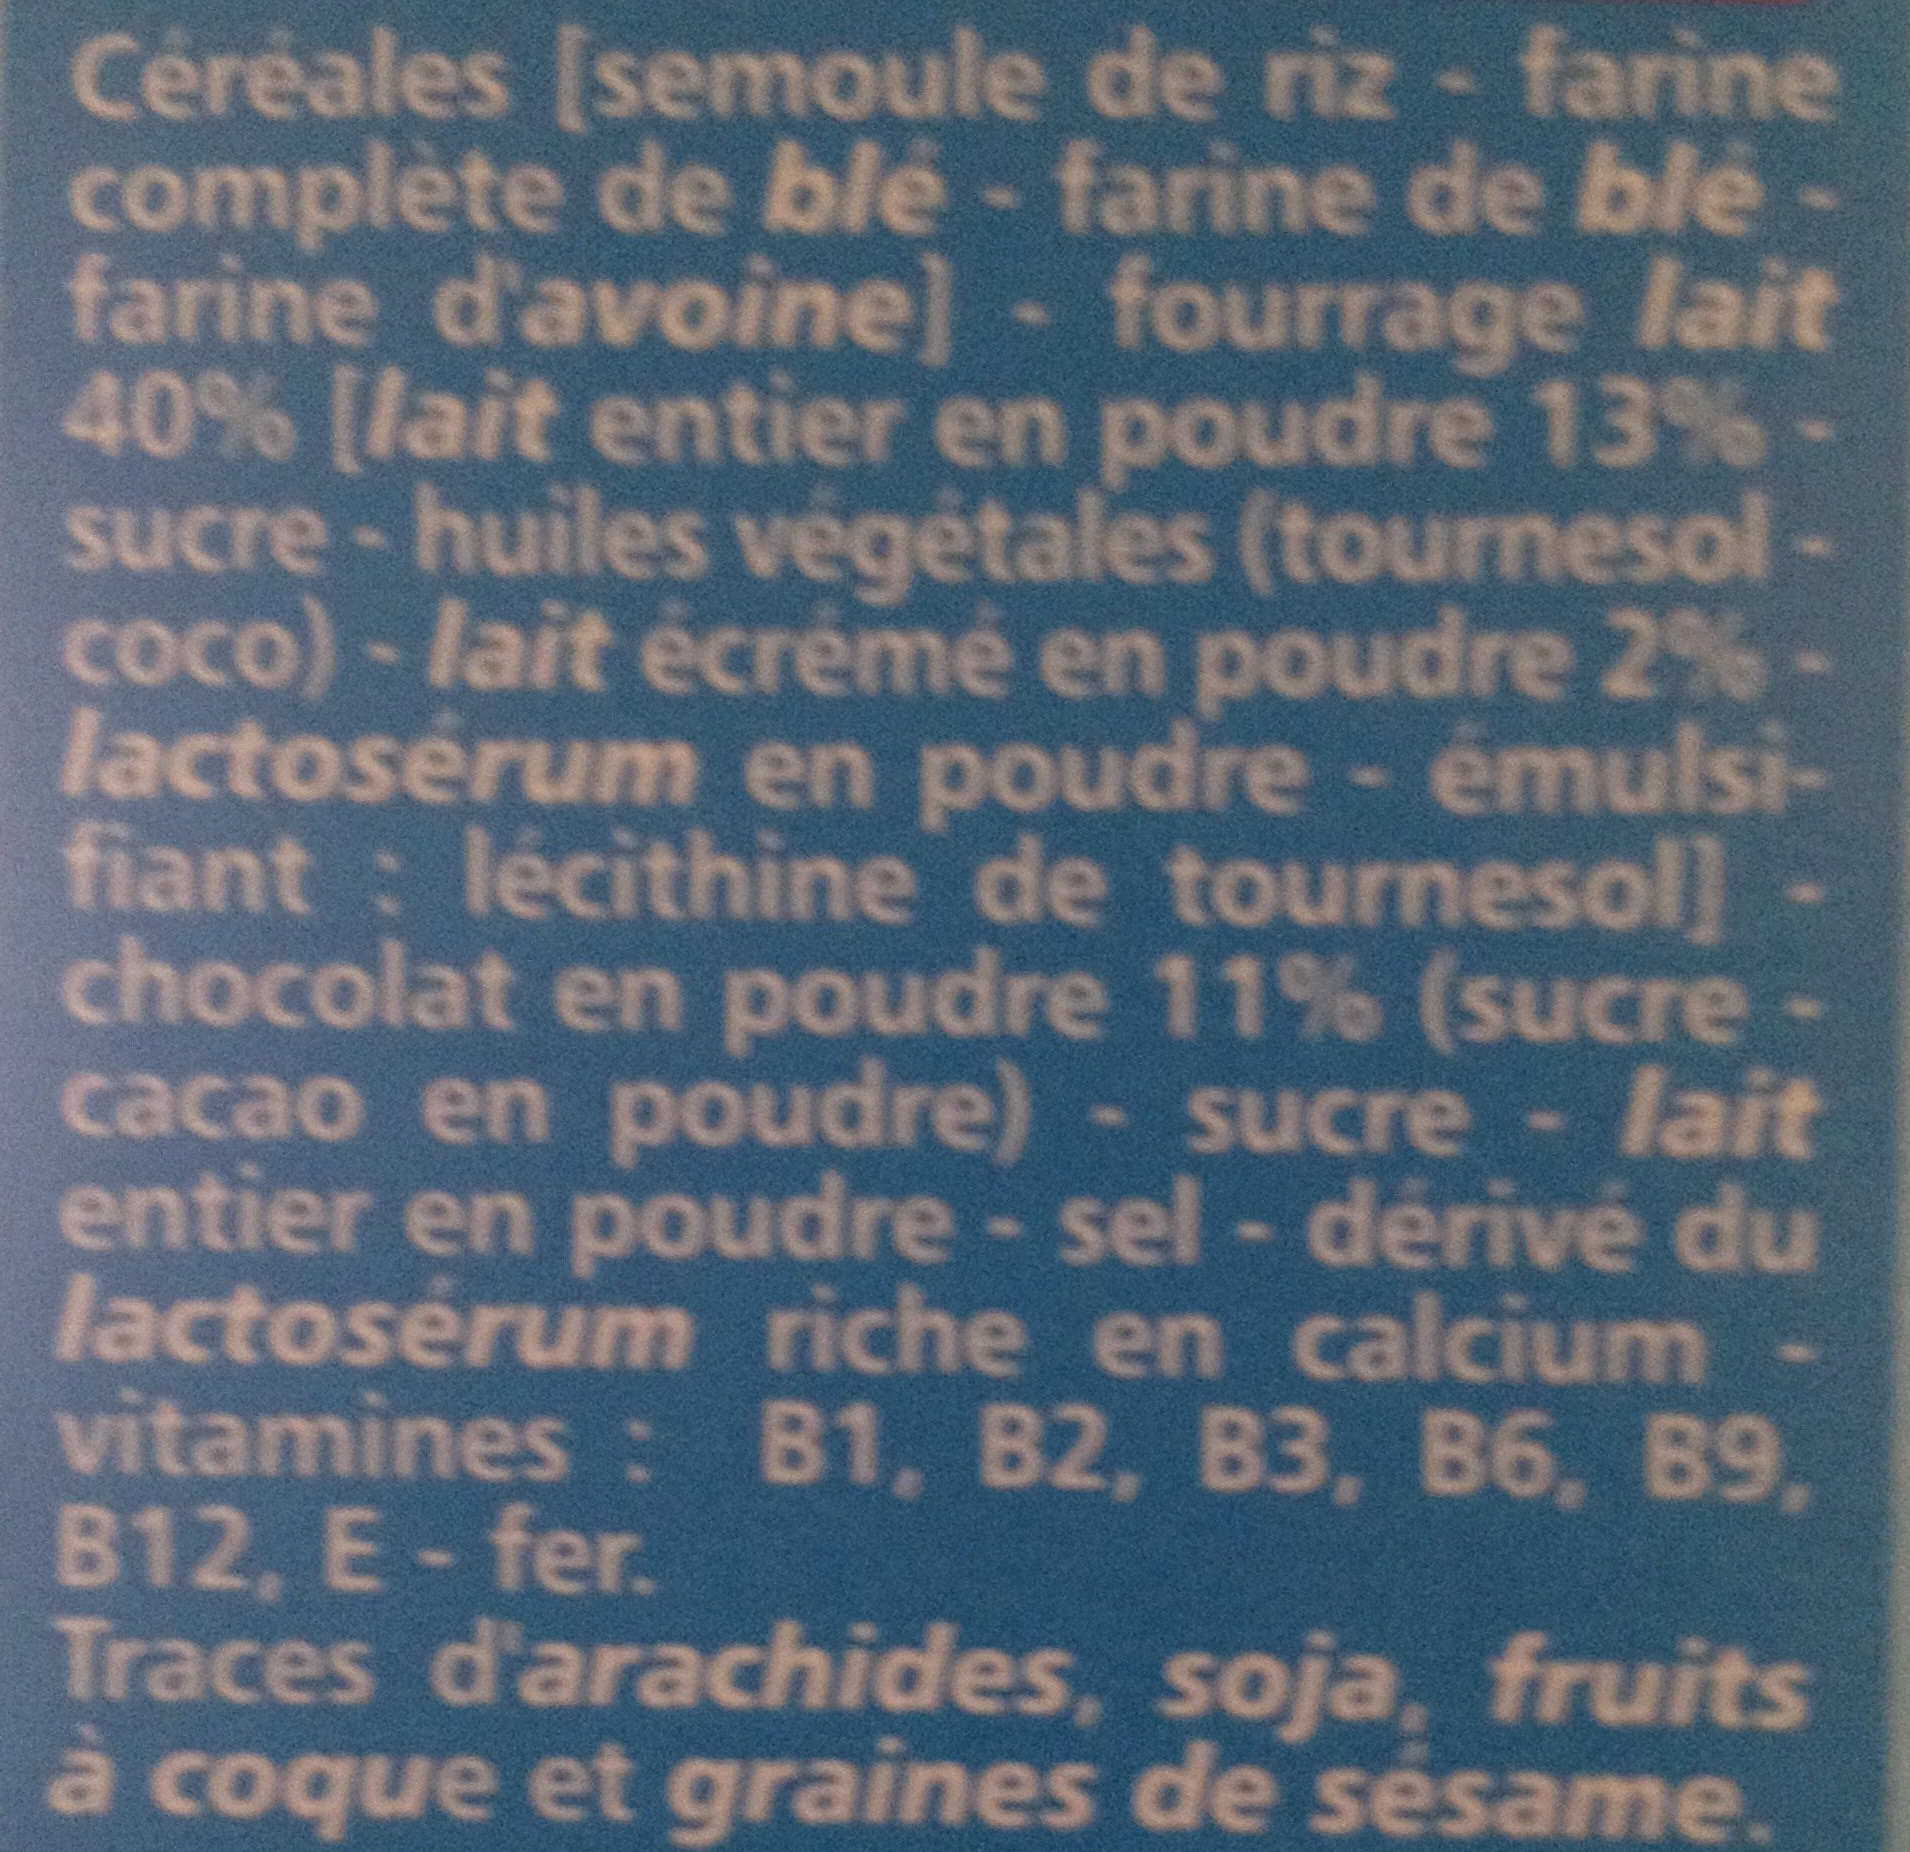 Fourrés choc' cœur lait 7 vitamines et fer - المكونات - fr